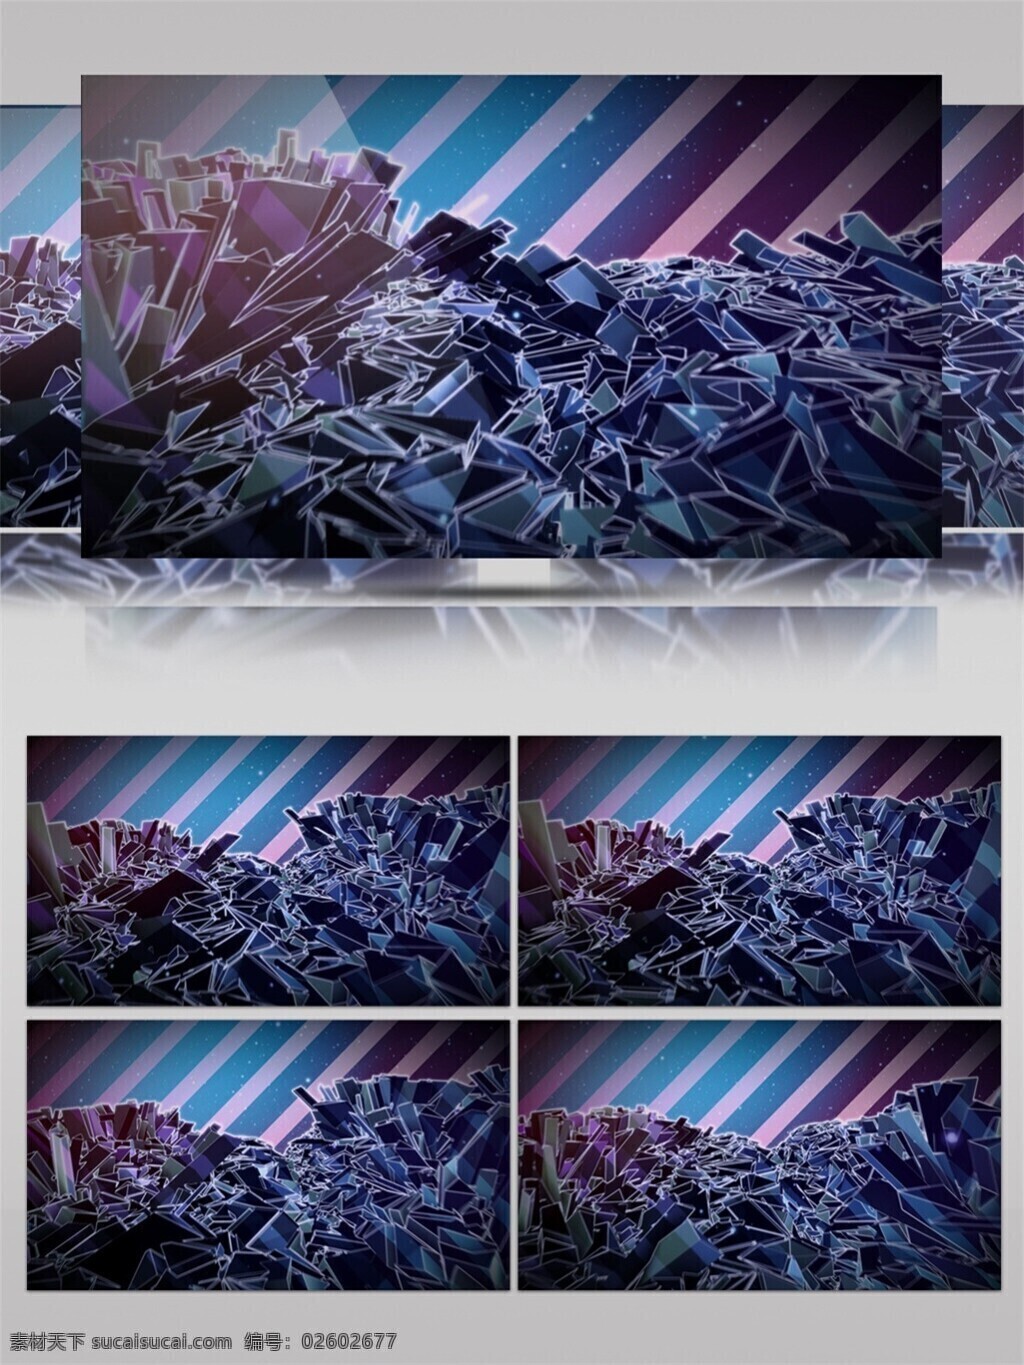 蓝色 星际 光束 视频 激光 紫色 手机壁纸 高清视频素材 电脑屏幕保护